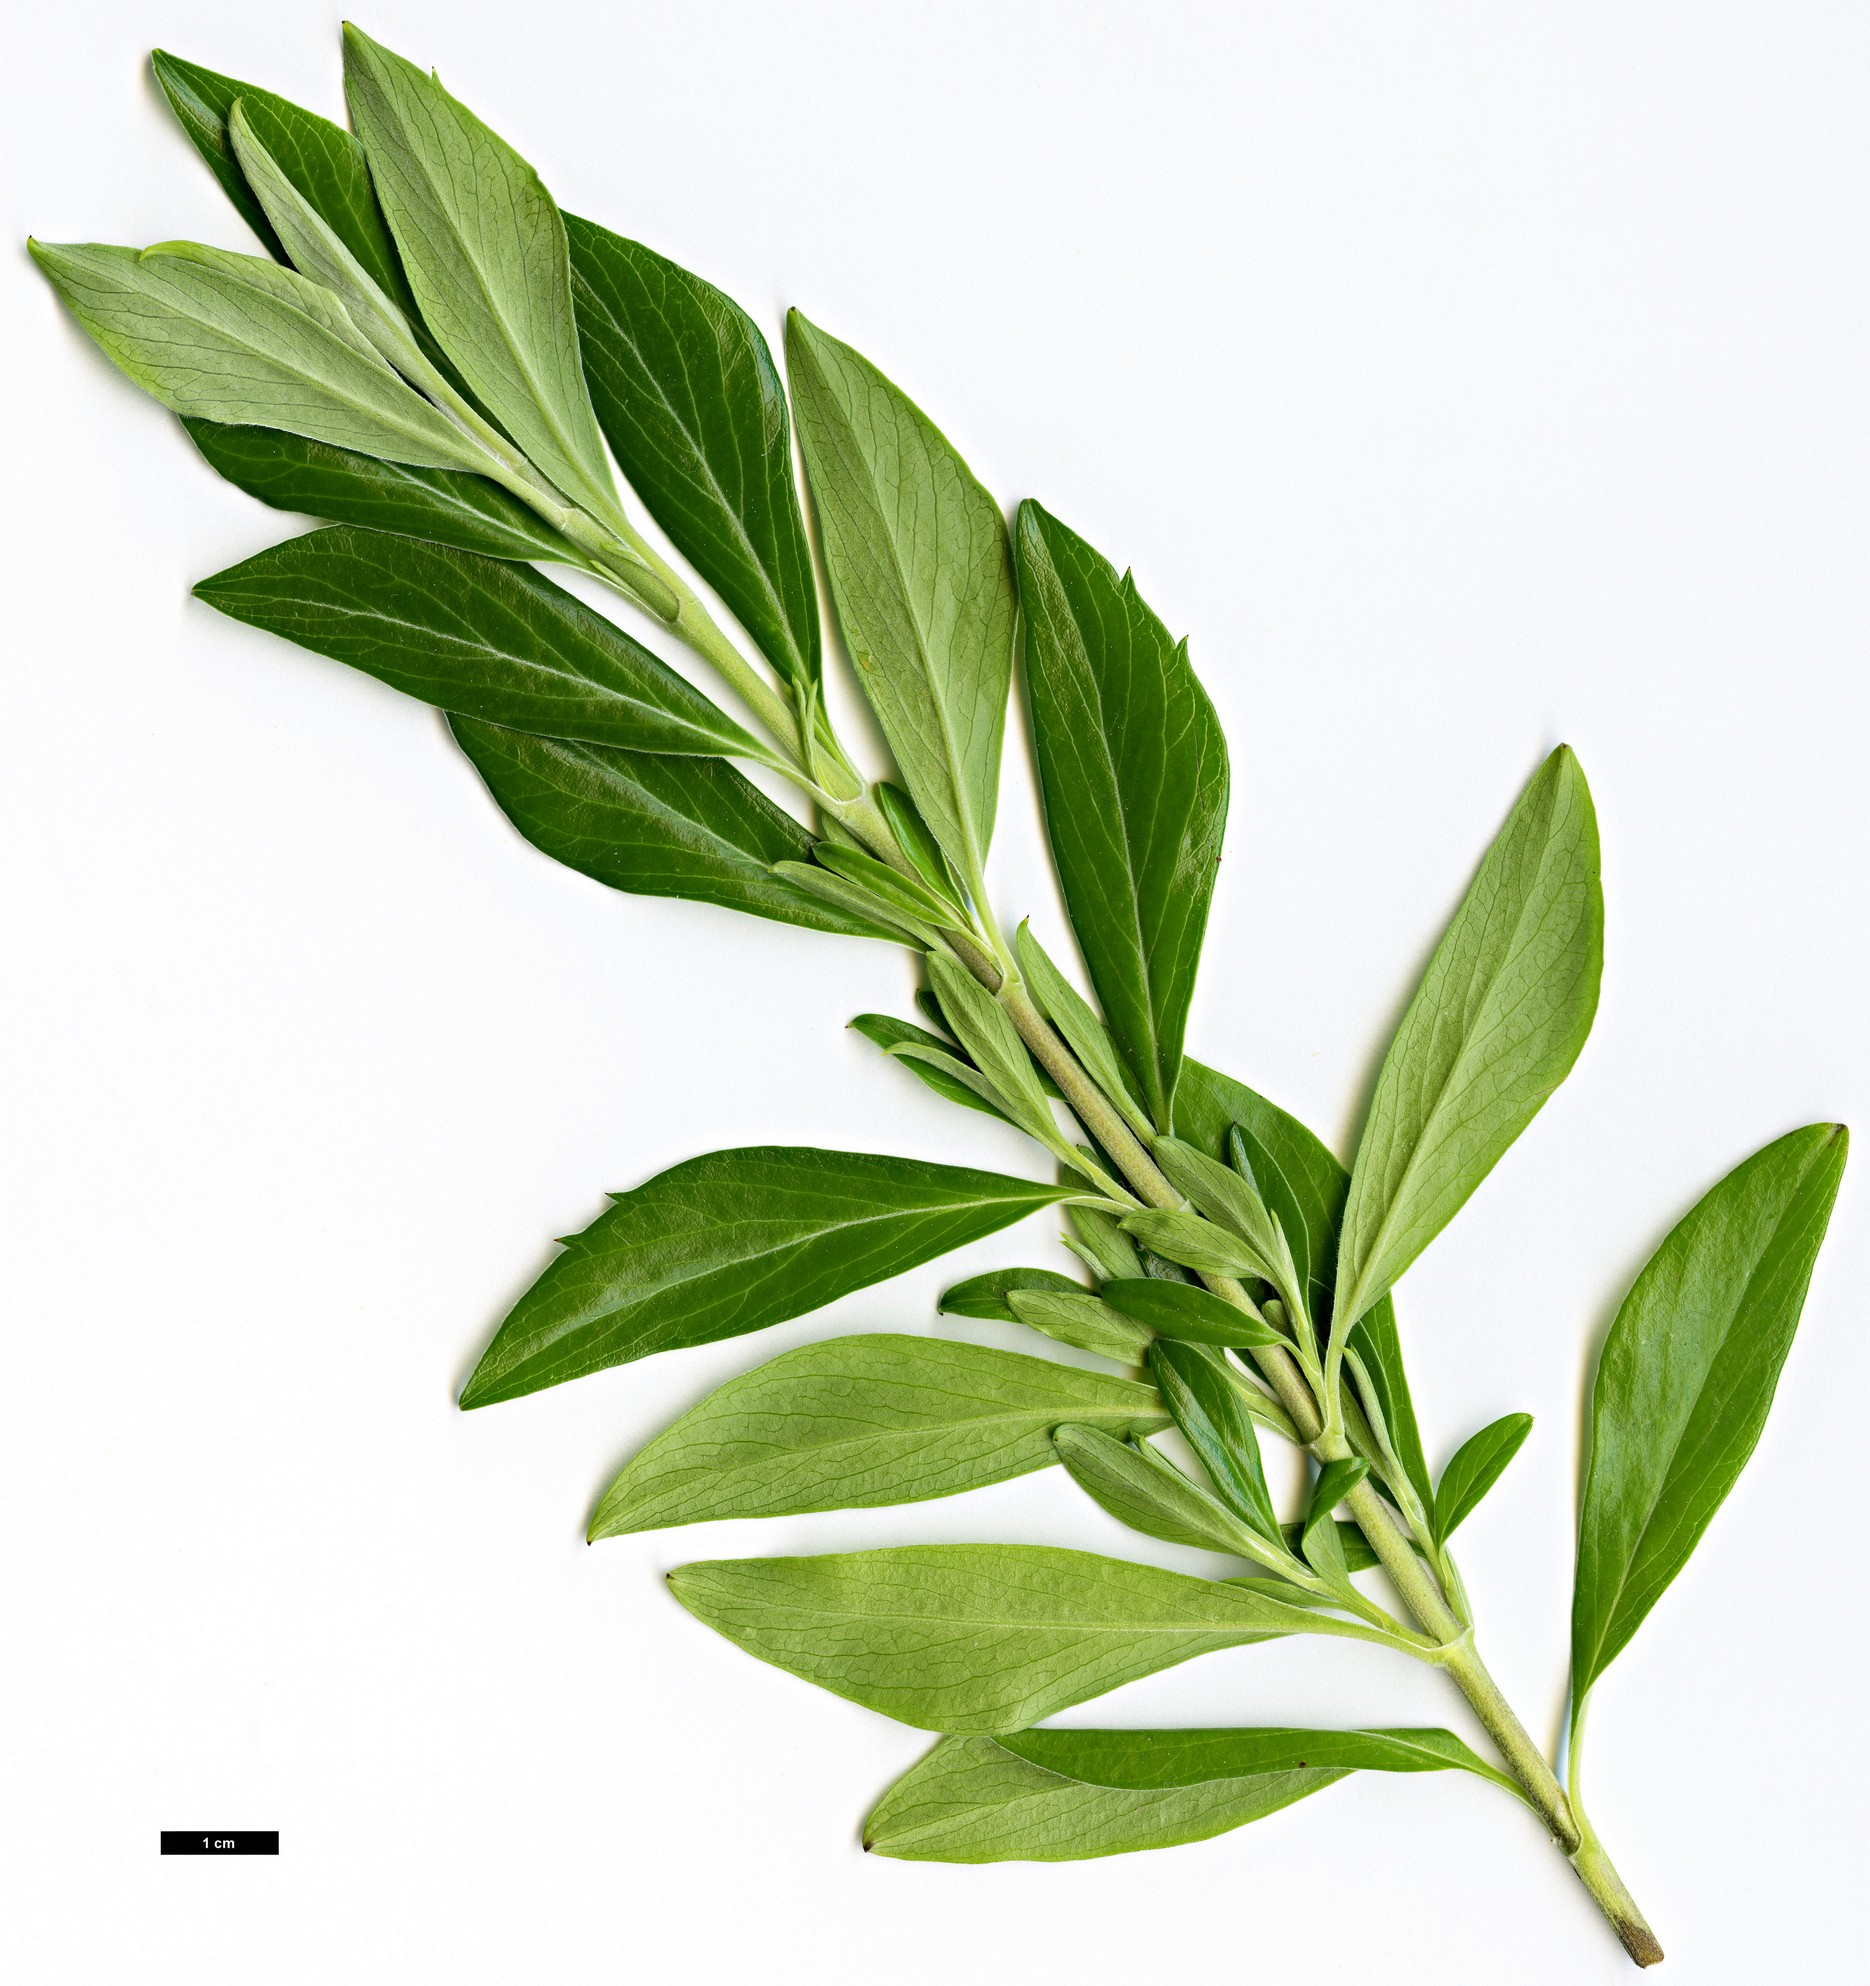 High resolution image: Family: Columelliaceae - Genus: Columellia - Taxon: oblonga - SpeciesSub: subsp. sericea